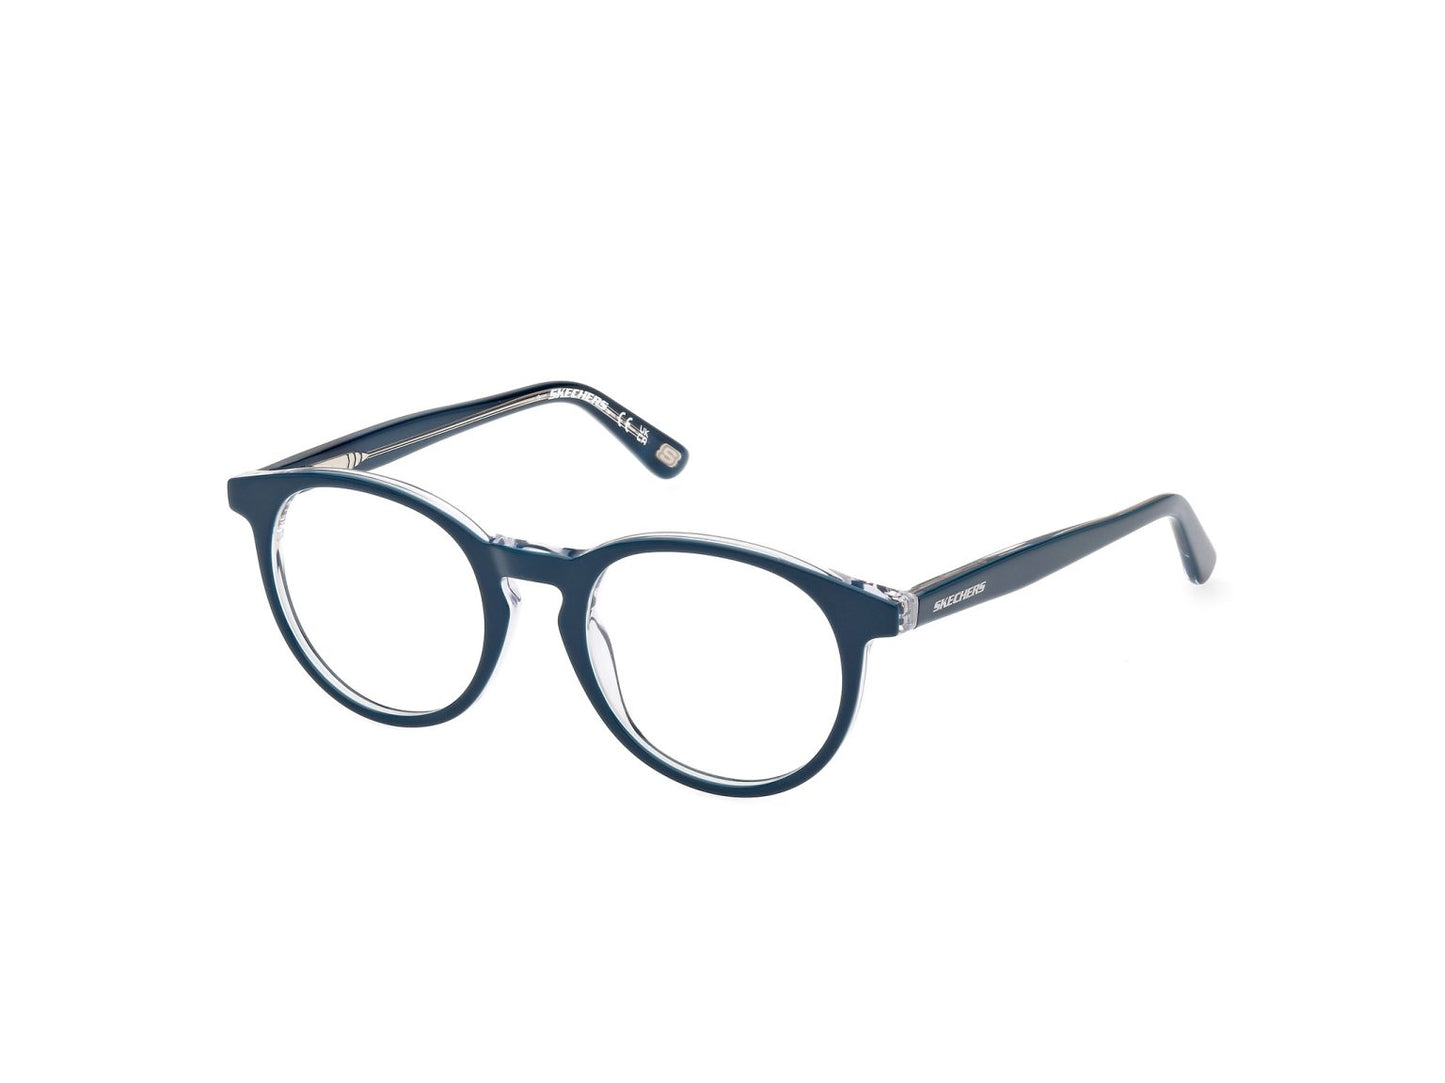 Skechers SE3356-089-48 48mm New Eyeglasses